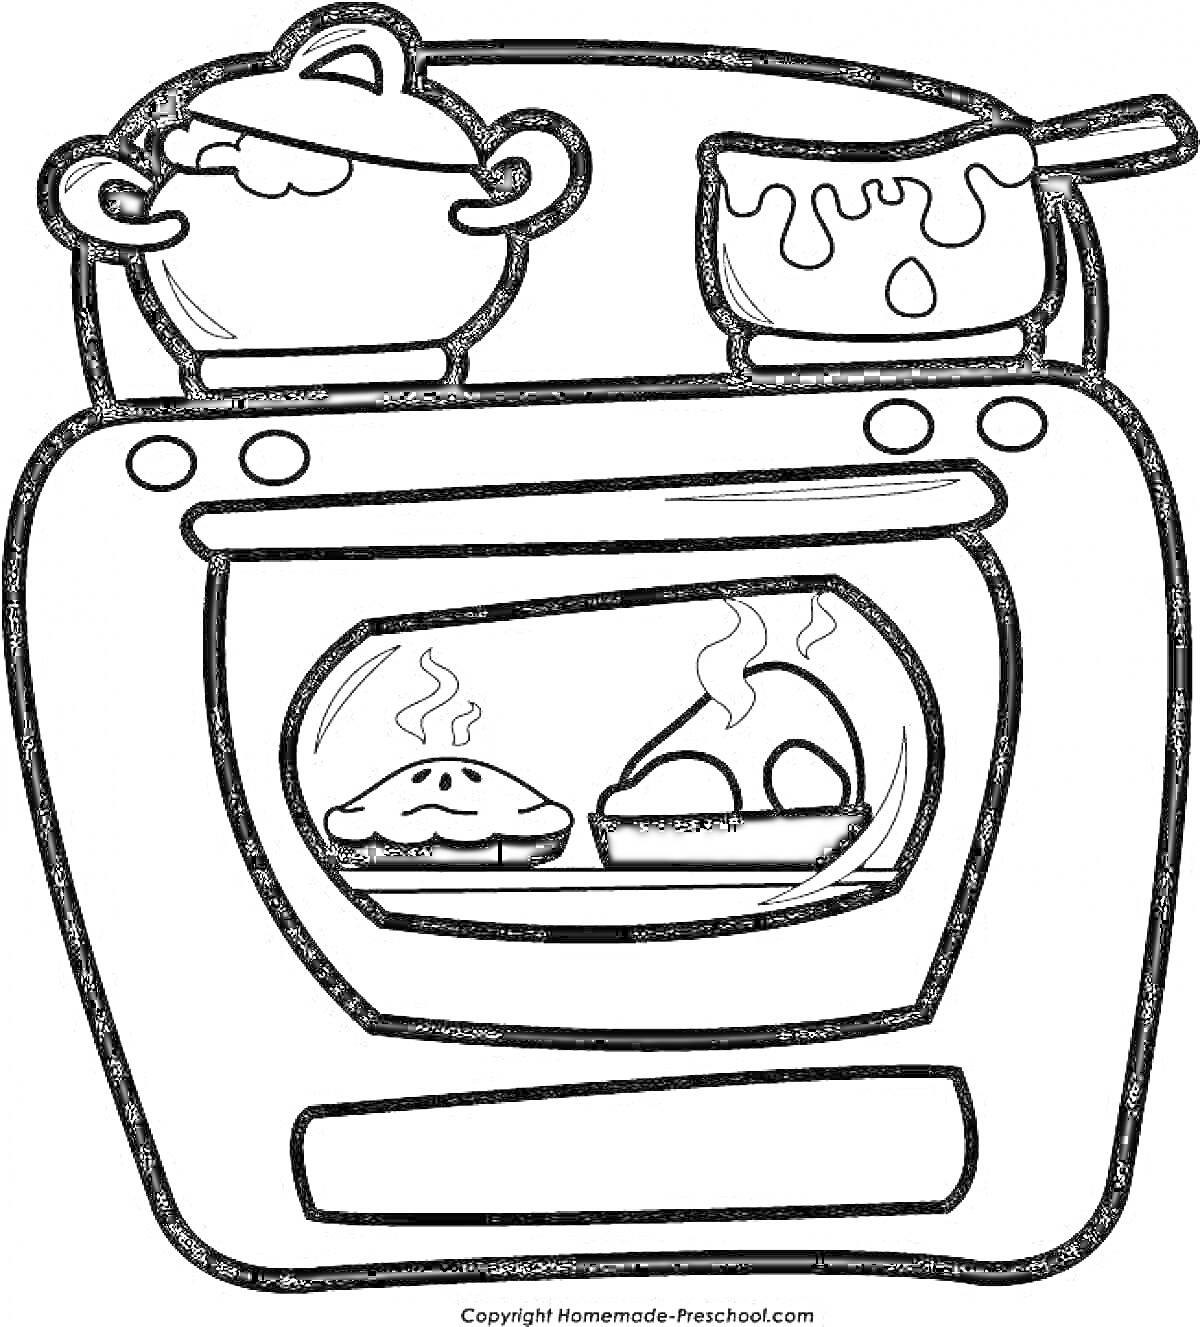 Раскраска печь с кастрюлями на плите и пирогами в духовке